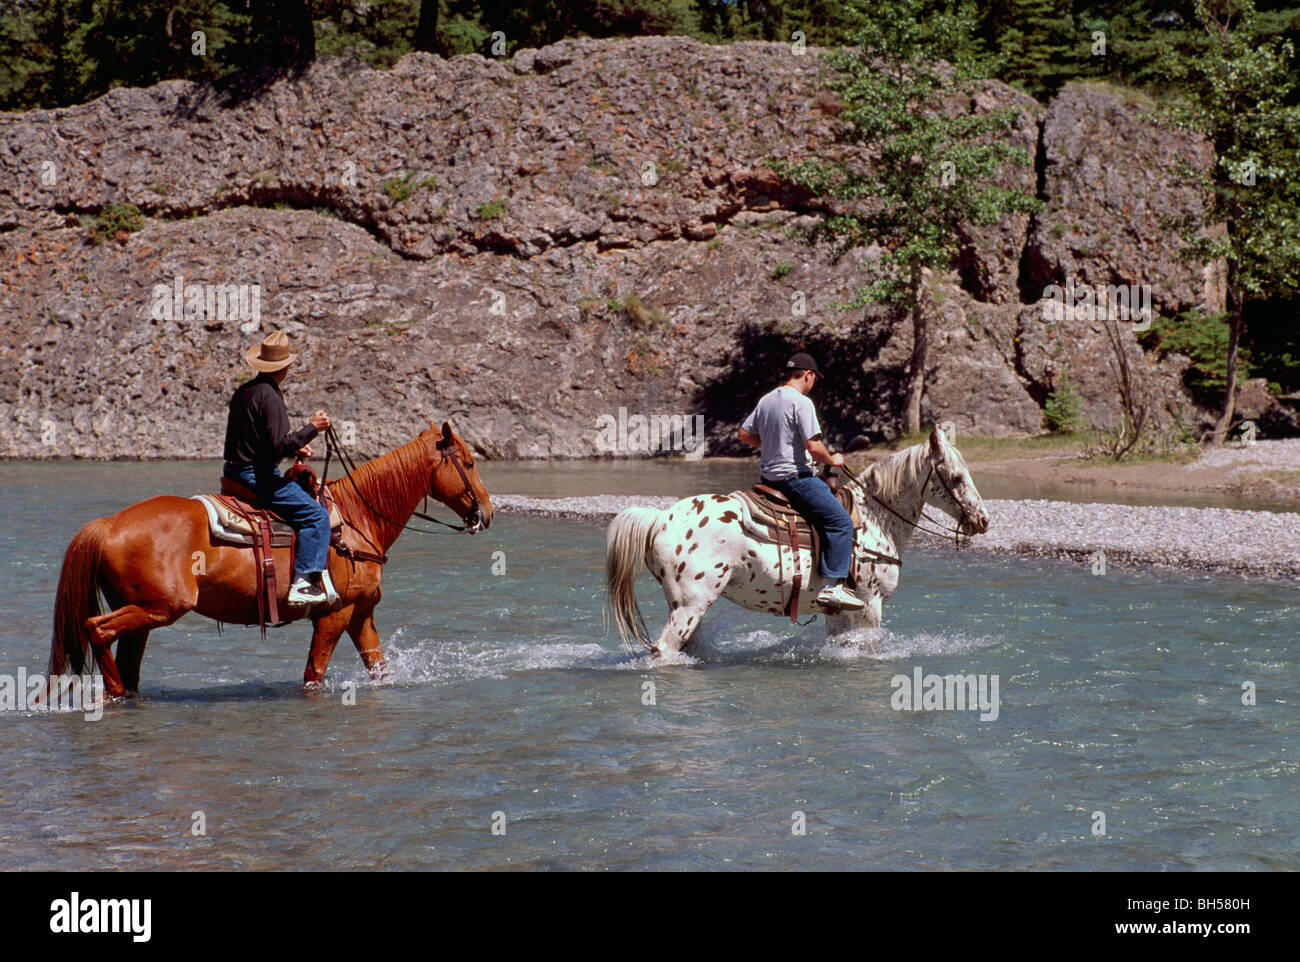 Il Parco Nazionale di Banff, Canadian Rockies, Alberta, Canada - Trekking a cavallo, Equitazione, cavalli Varcando il fiume, estate Foto Stock